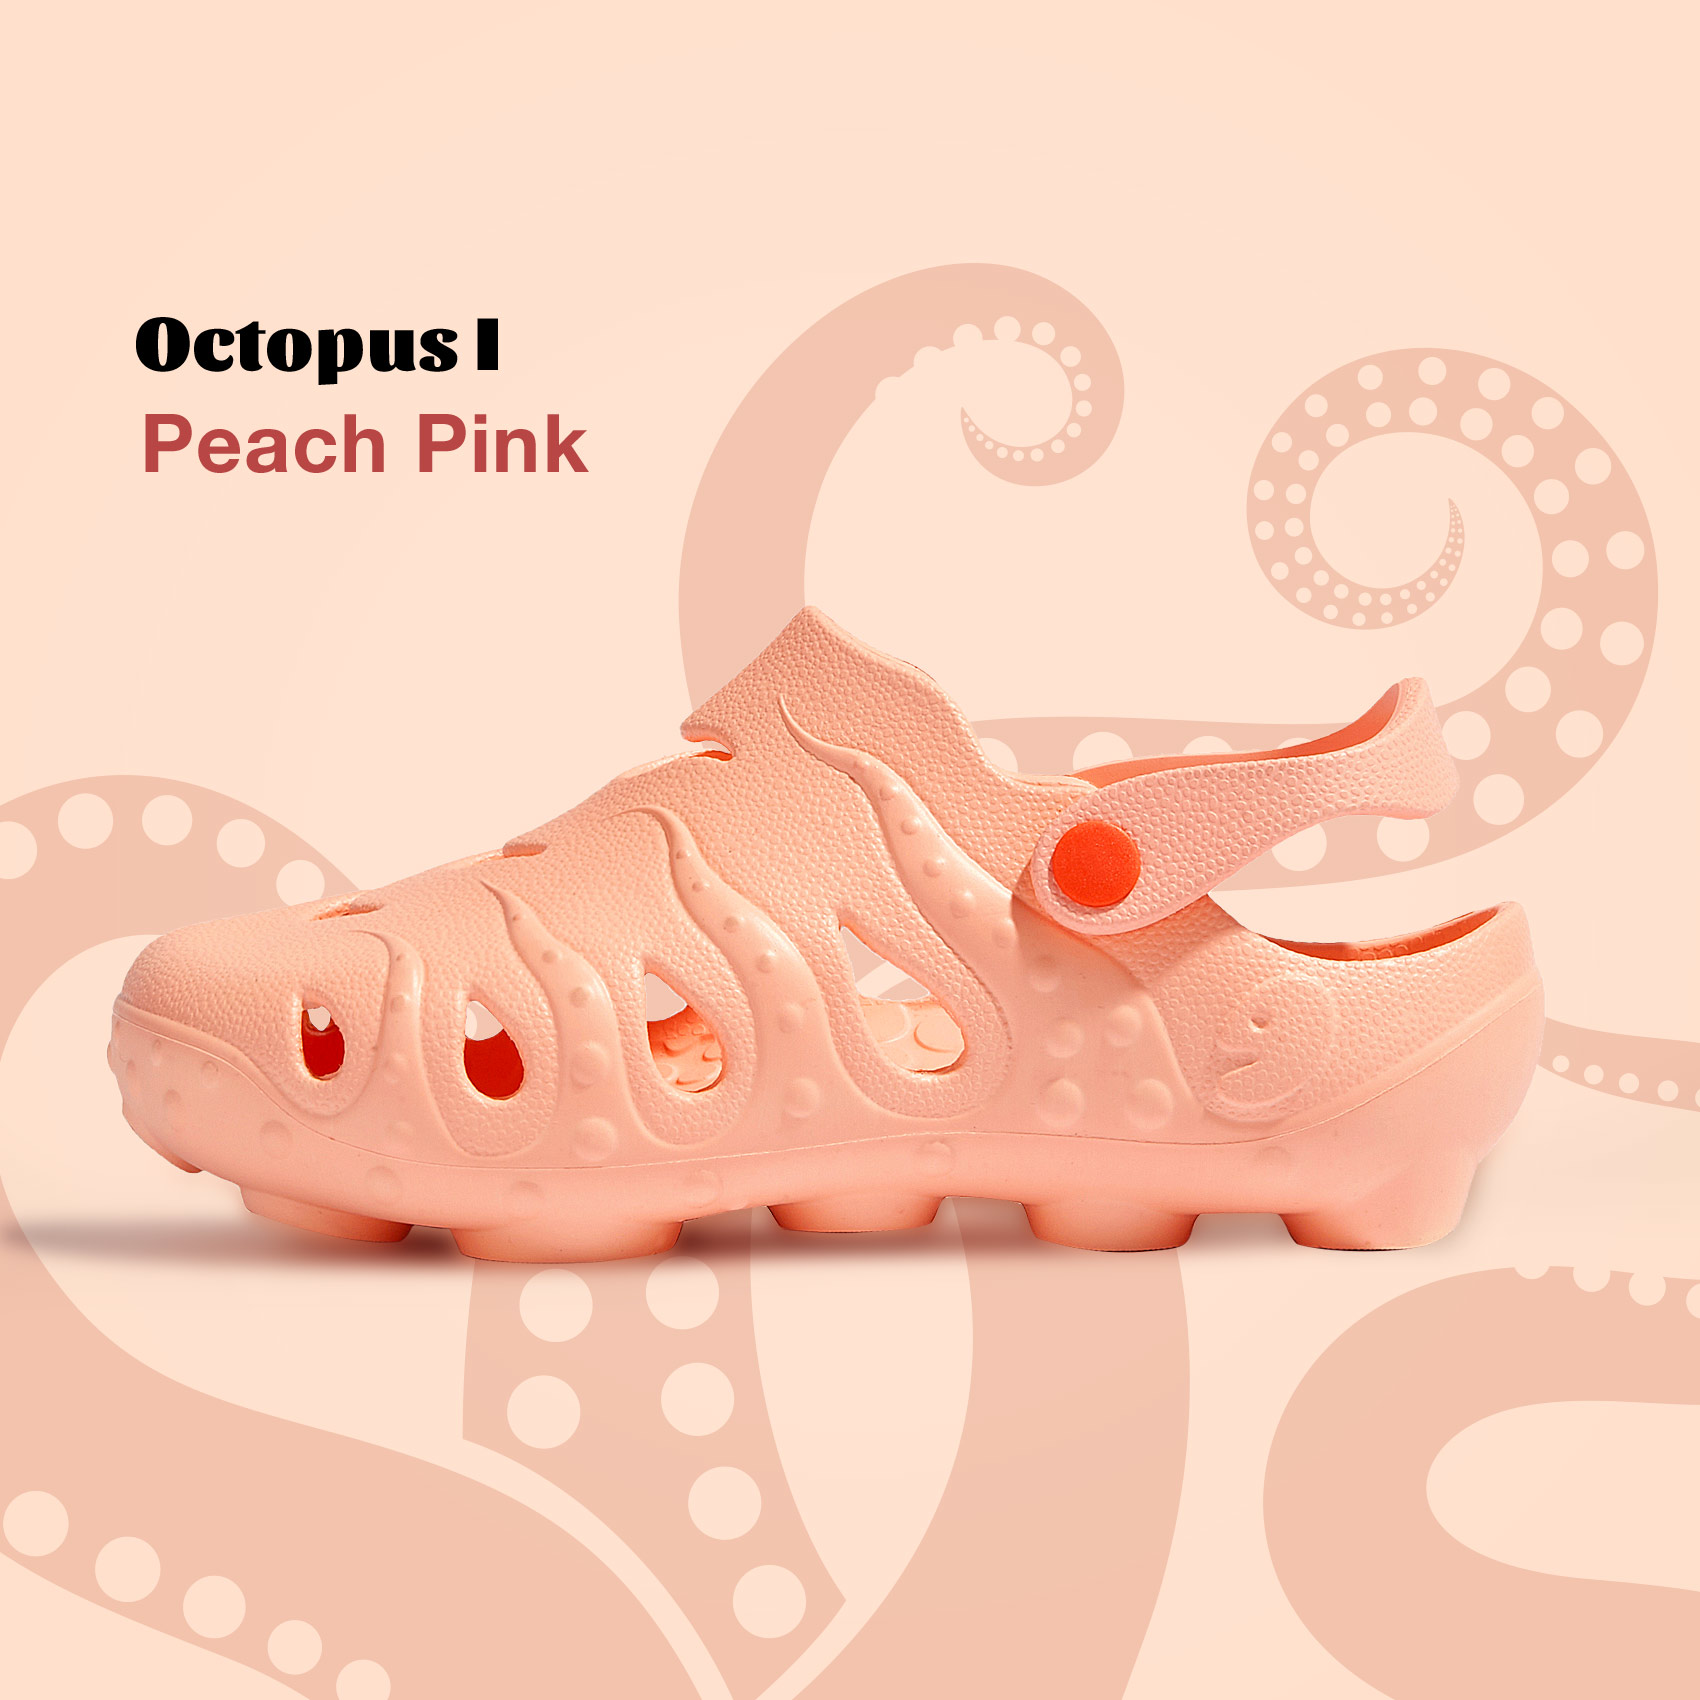 Octopusl Peach Pink 